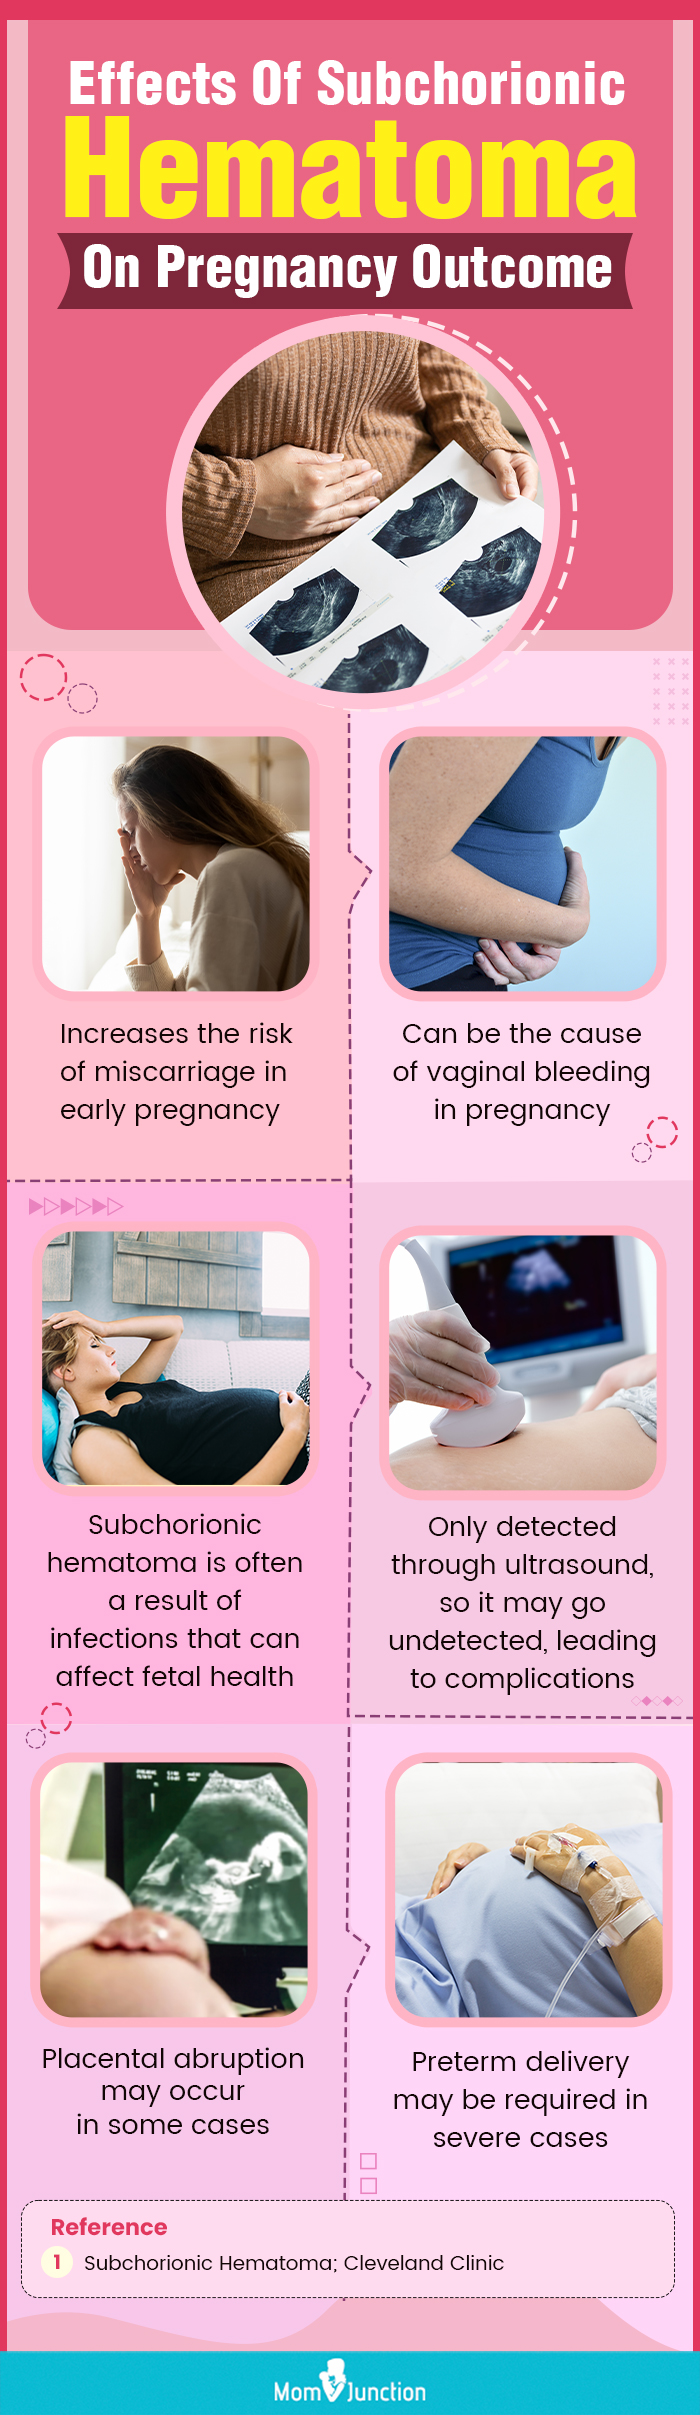 绒毛膜下血肿对妊娠结局的影响(信息图)